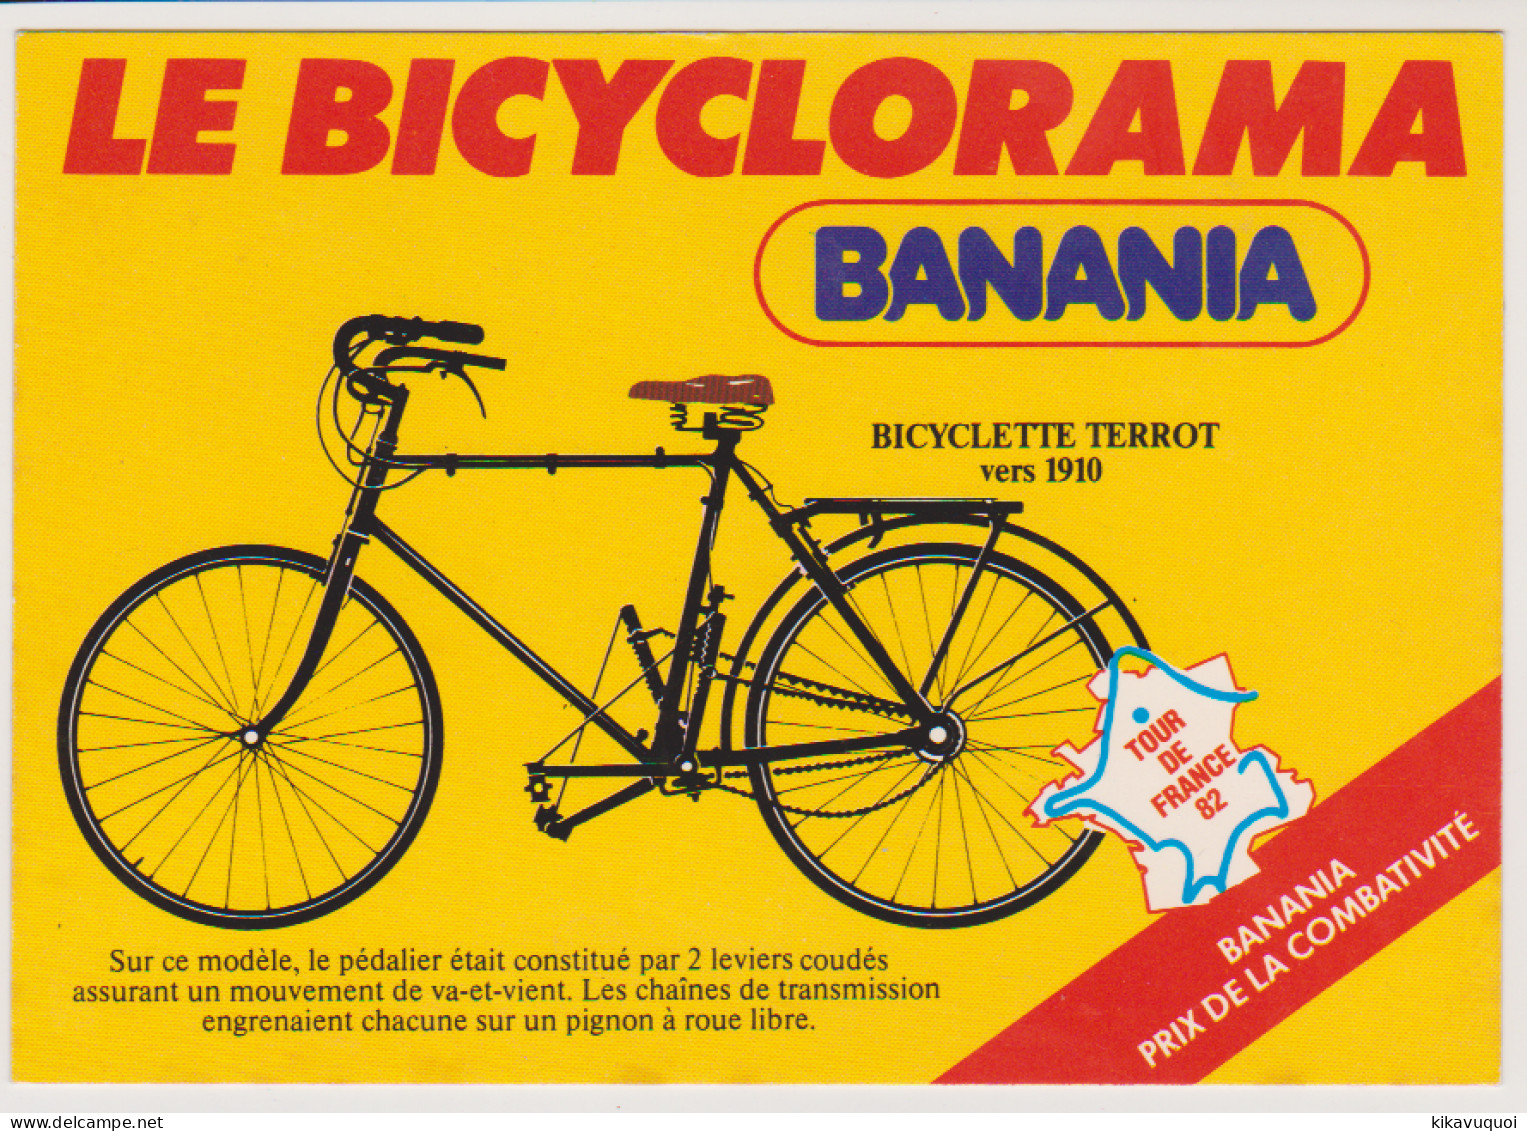 BANANIA -  69eme TOUR DE FRANCE - LE BICYCLORAMA - VELO - CYCLE - CARTE POSTALE ANCIENNE - Motos